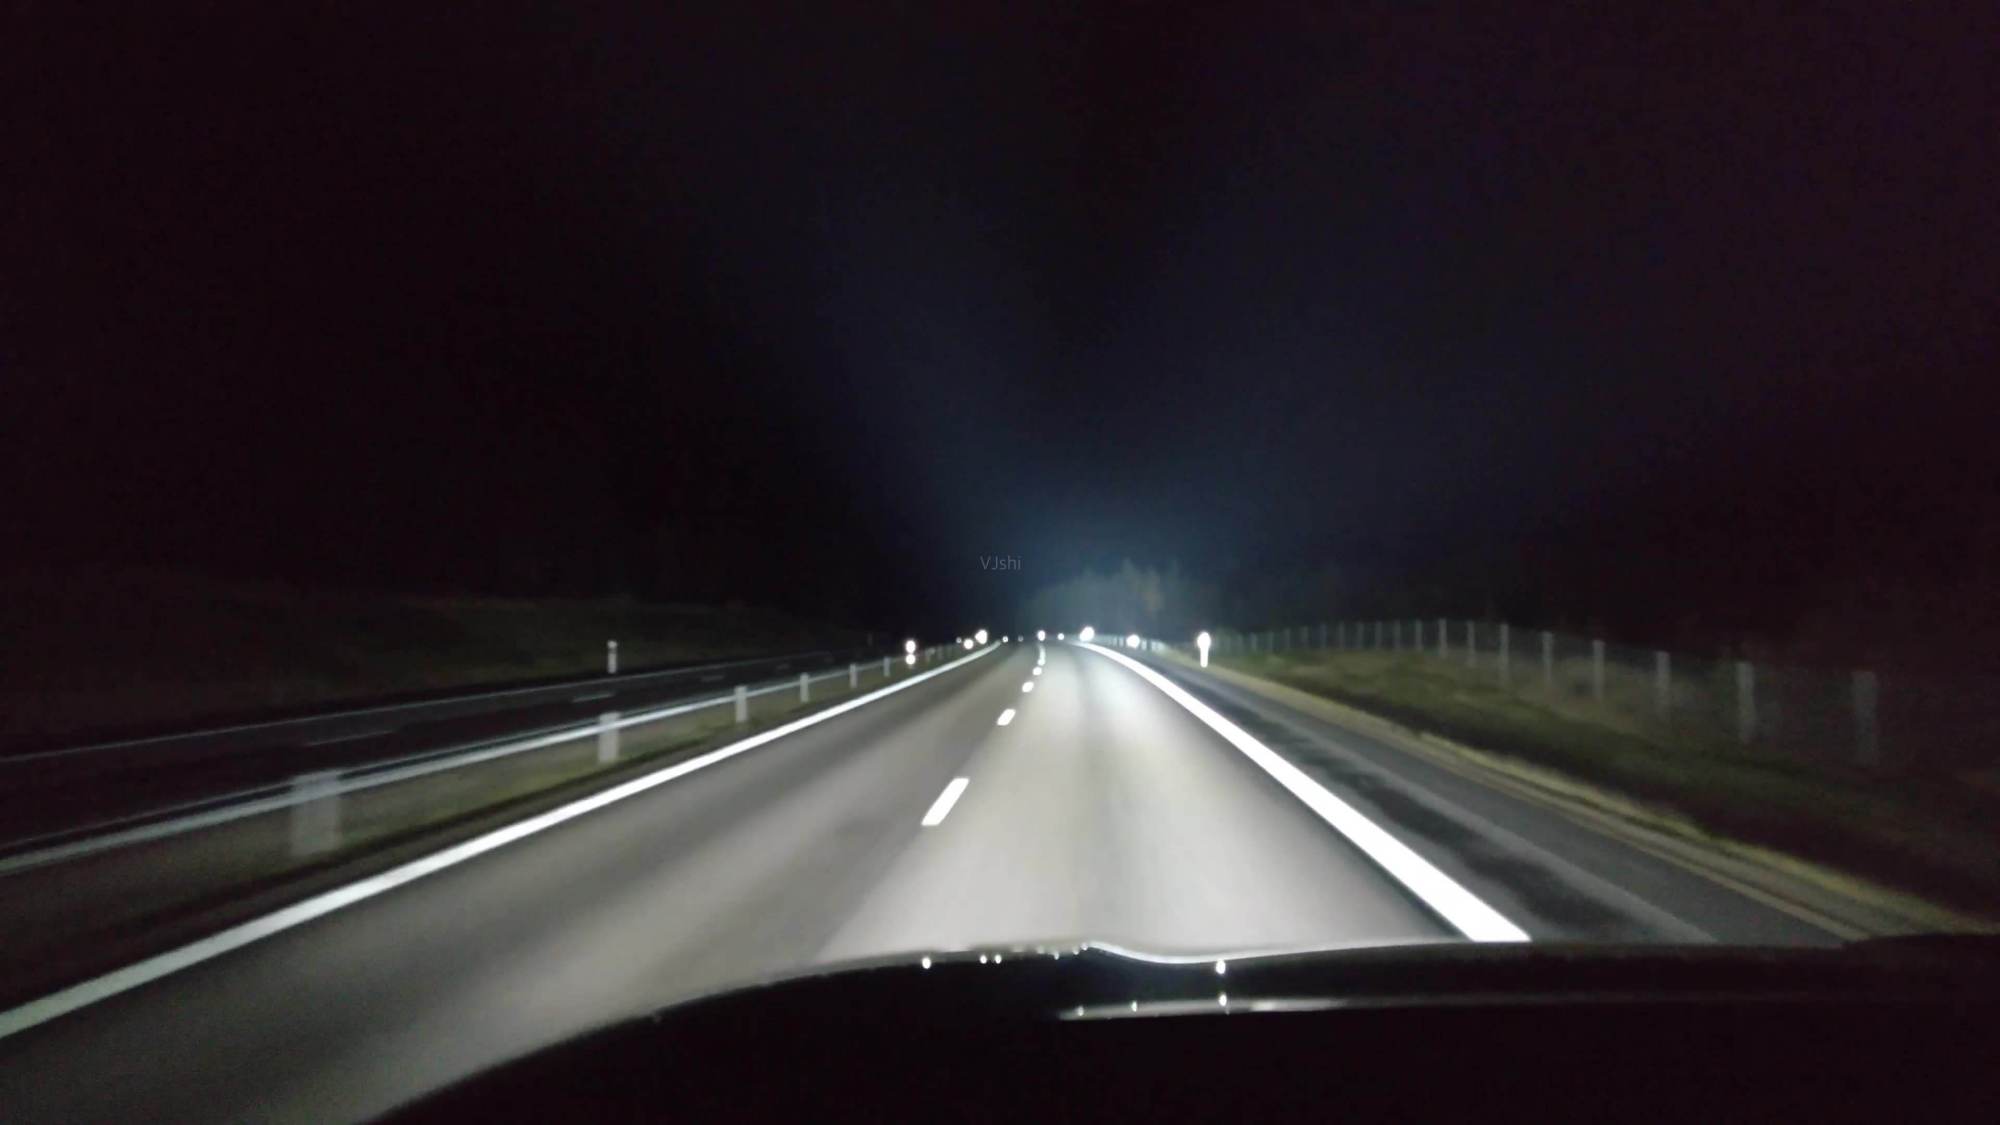 夜间在高速上行车,能用远光灯吗?老司机:原来一直做错了